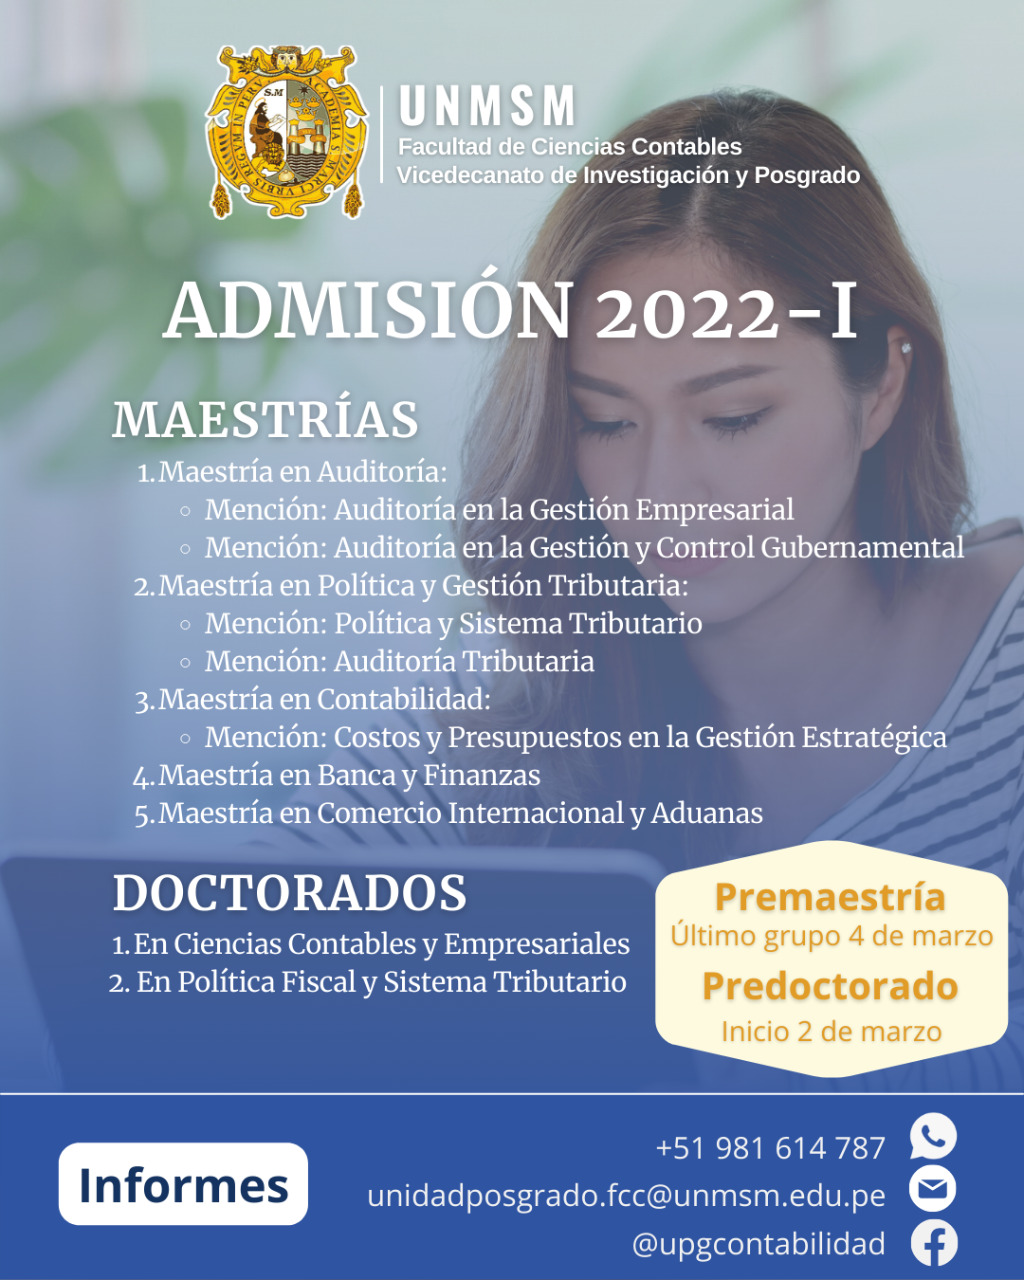 Admisión 2022 - I - Facultad de Ciencias Contables - UNMSM